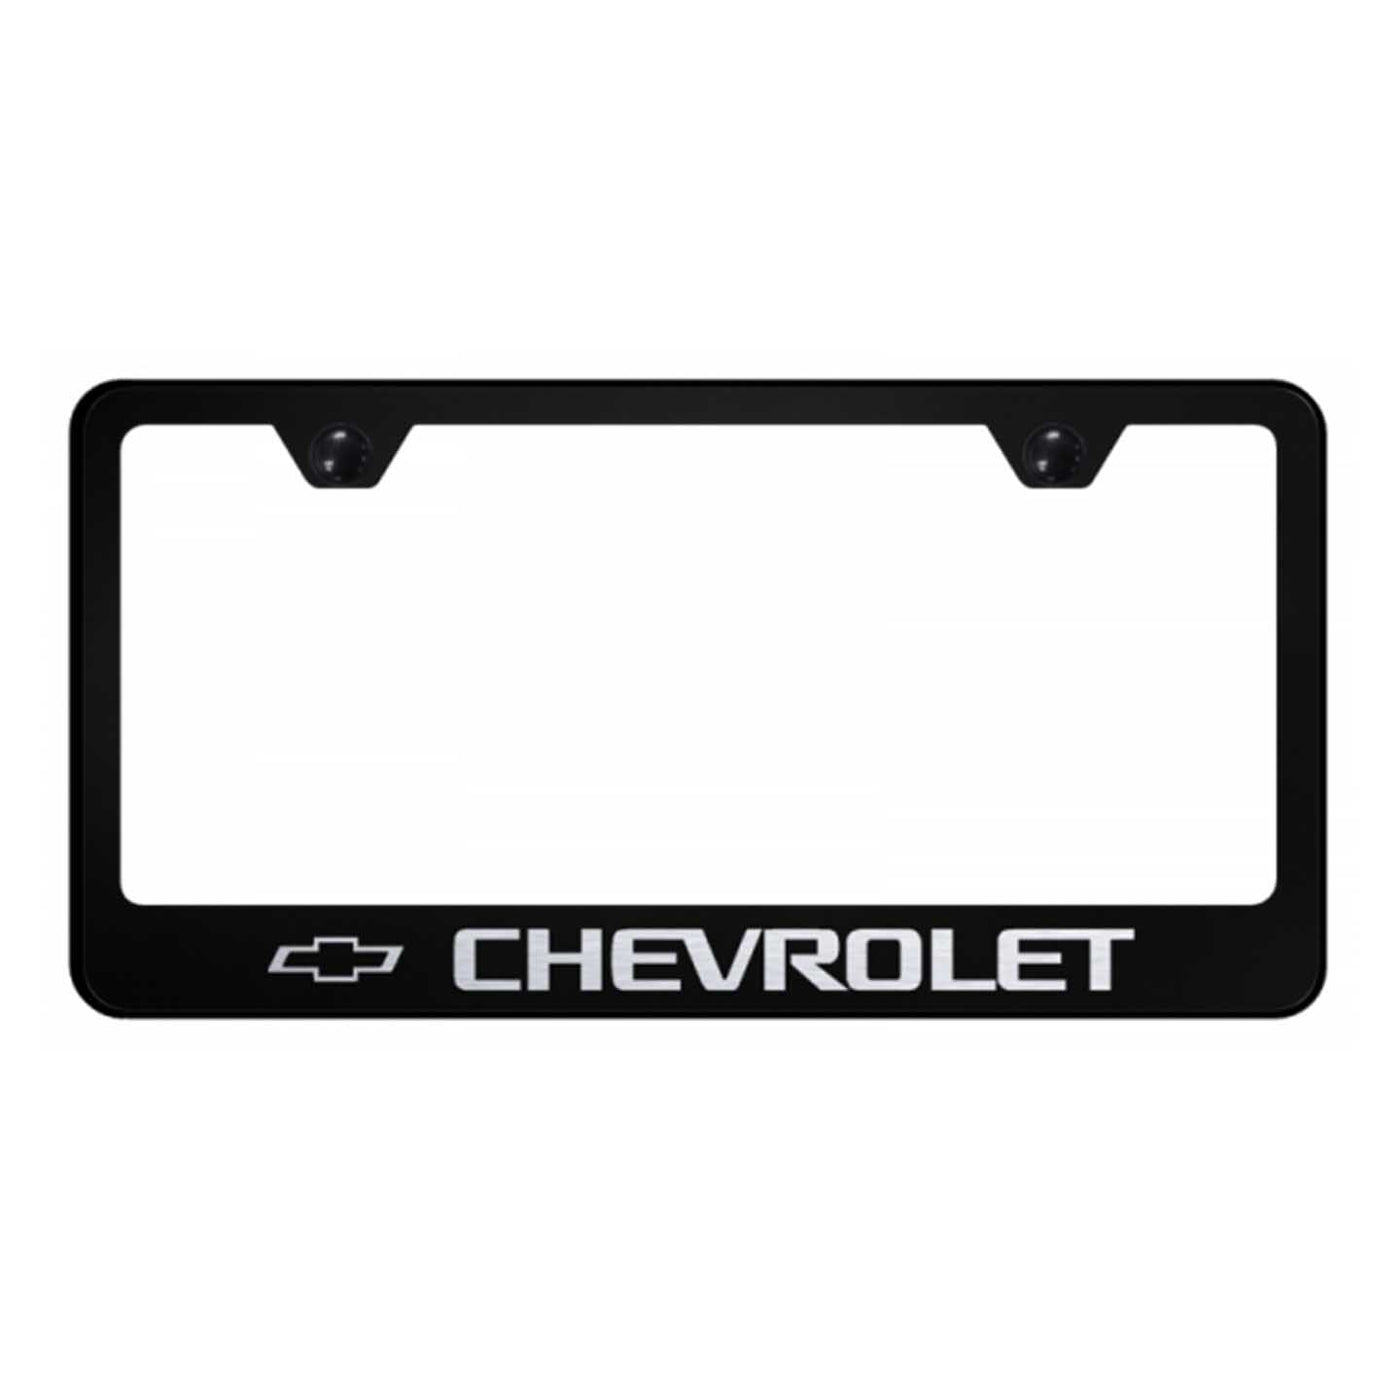 Chevrolet Cut-Out Frame - Laser Etched Black